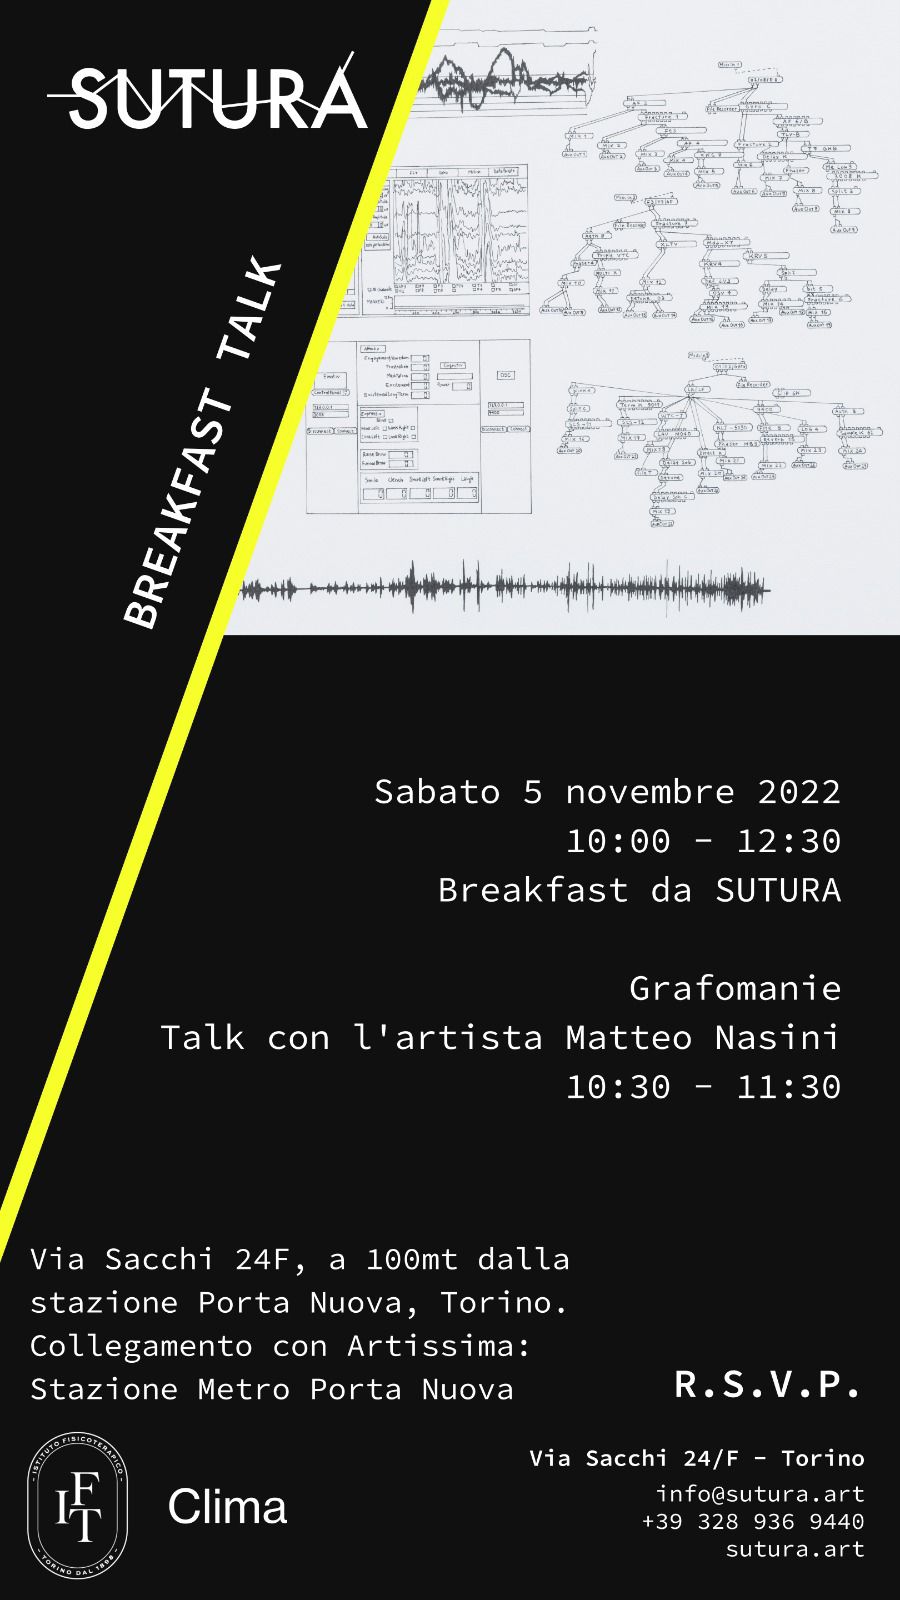 Breakfast Talk - Matteo Nasini